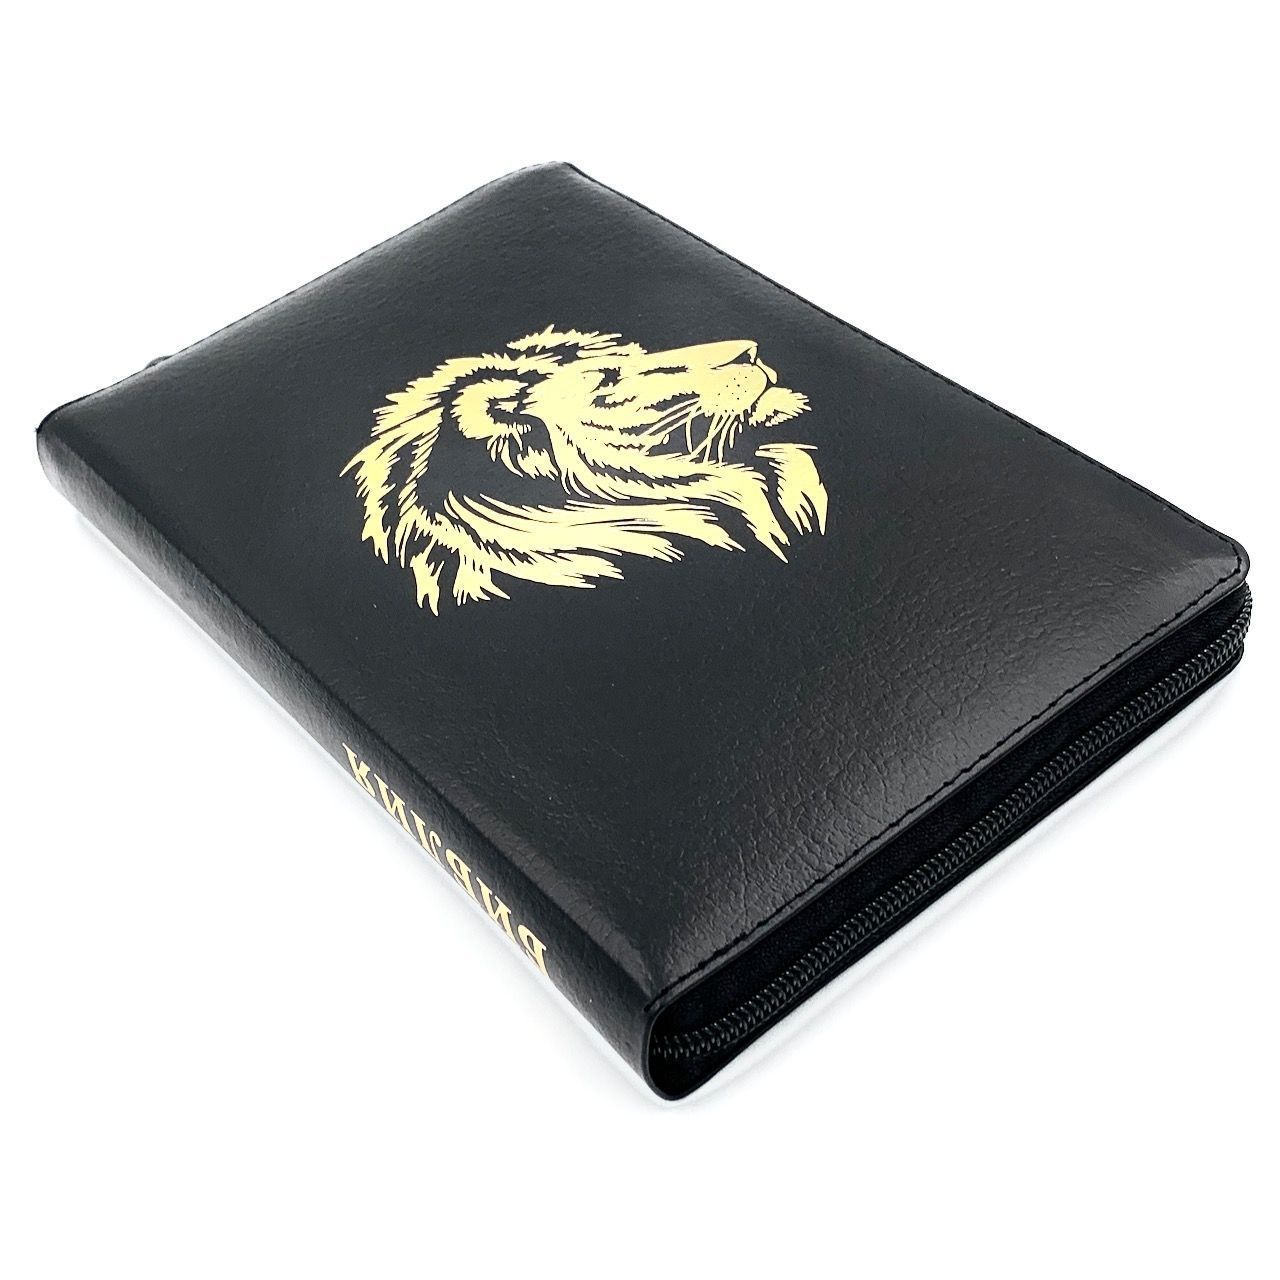 Библия 055zti код 24055-40 кожаный переплет на молнии с индексами, цвет черный матовый пятнистый, дизайн золотой лев, 143*220 мм